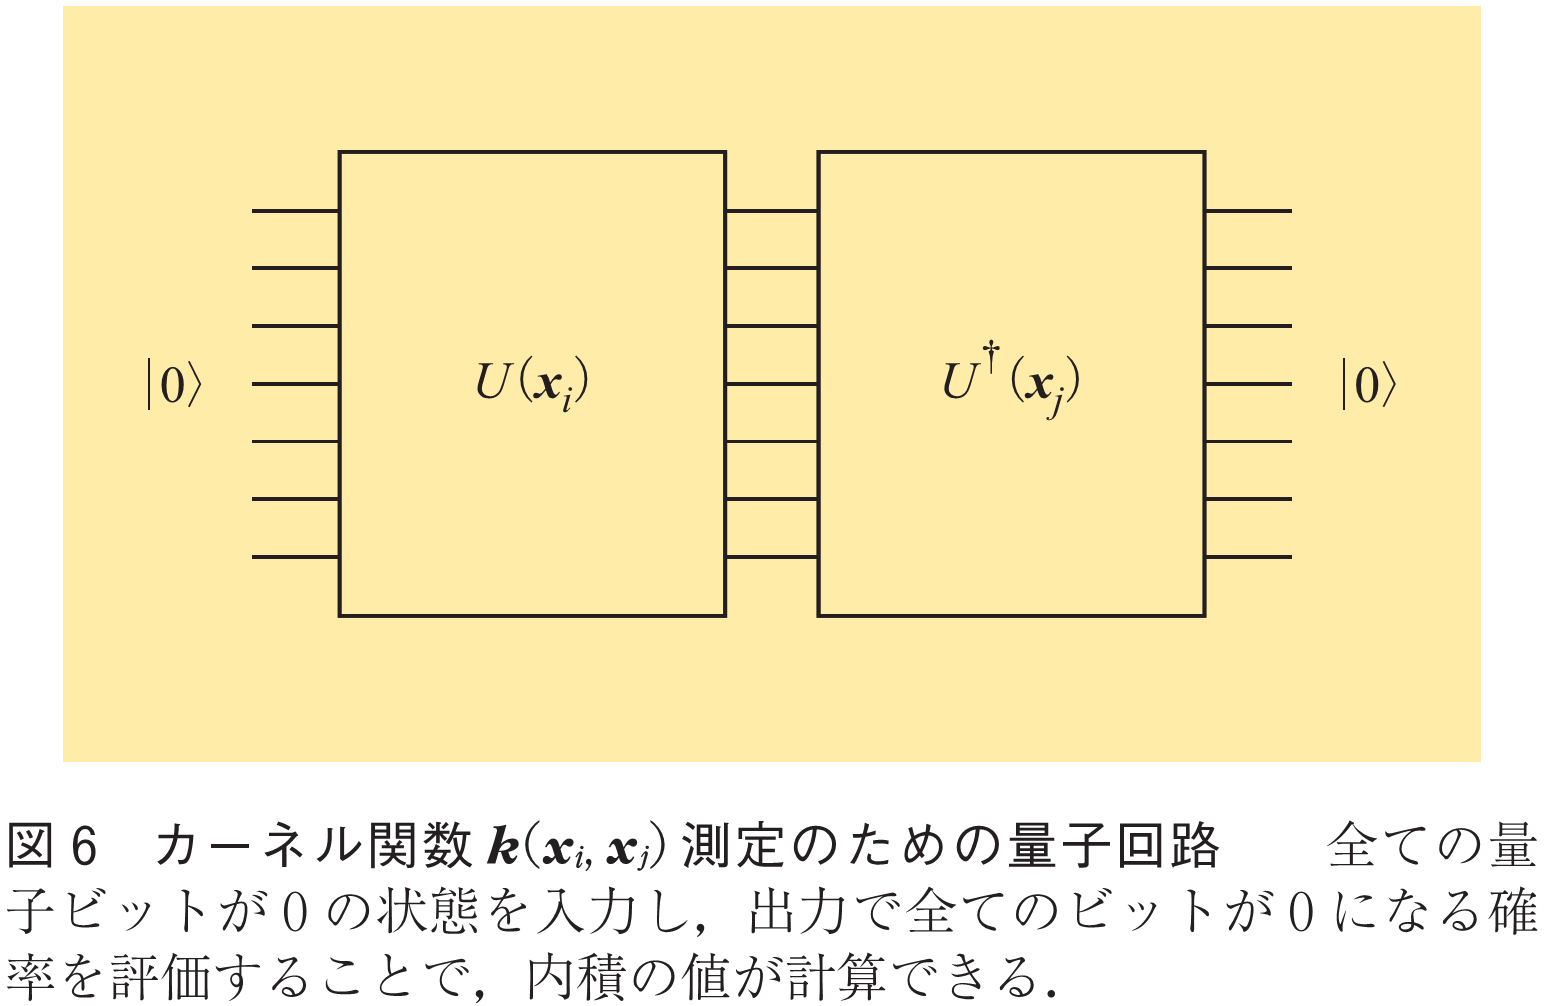 図6　カーネル関数k(χi,χj)測定のための量子回路